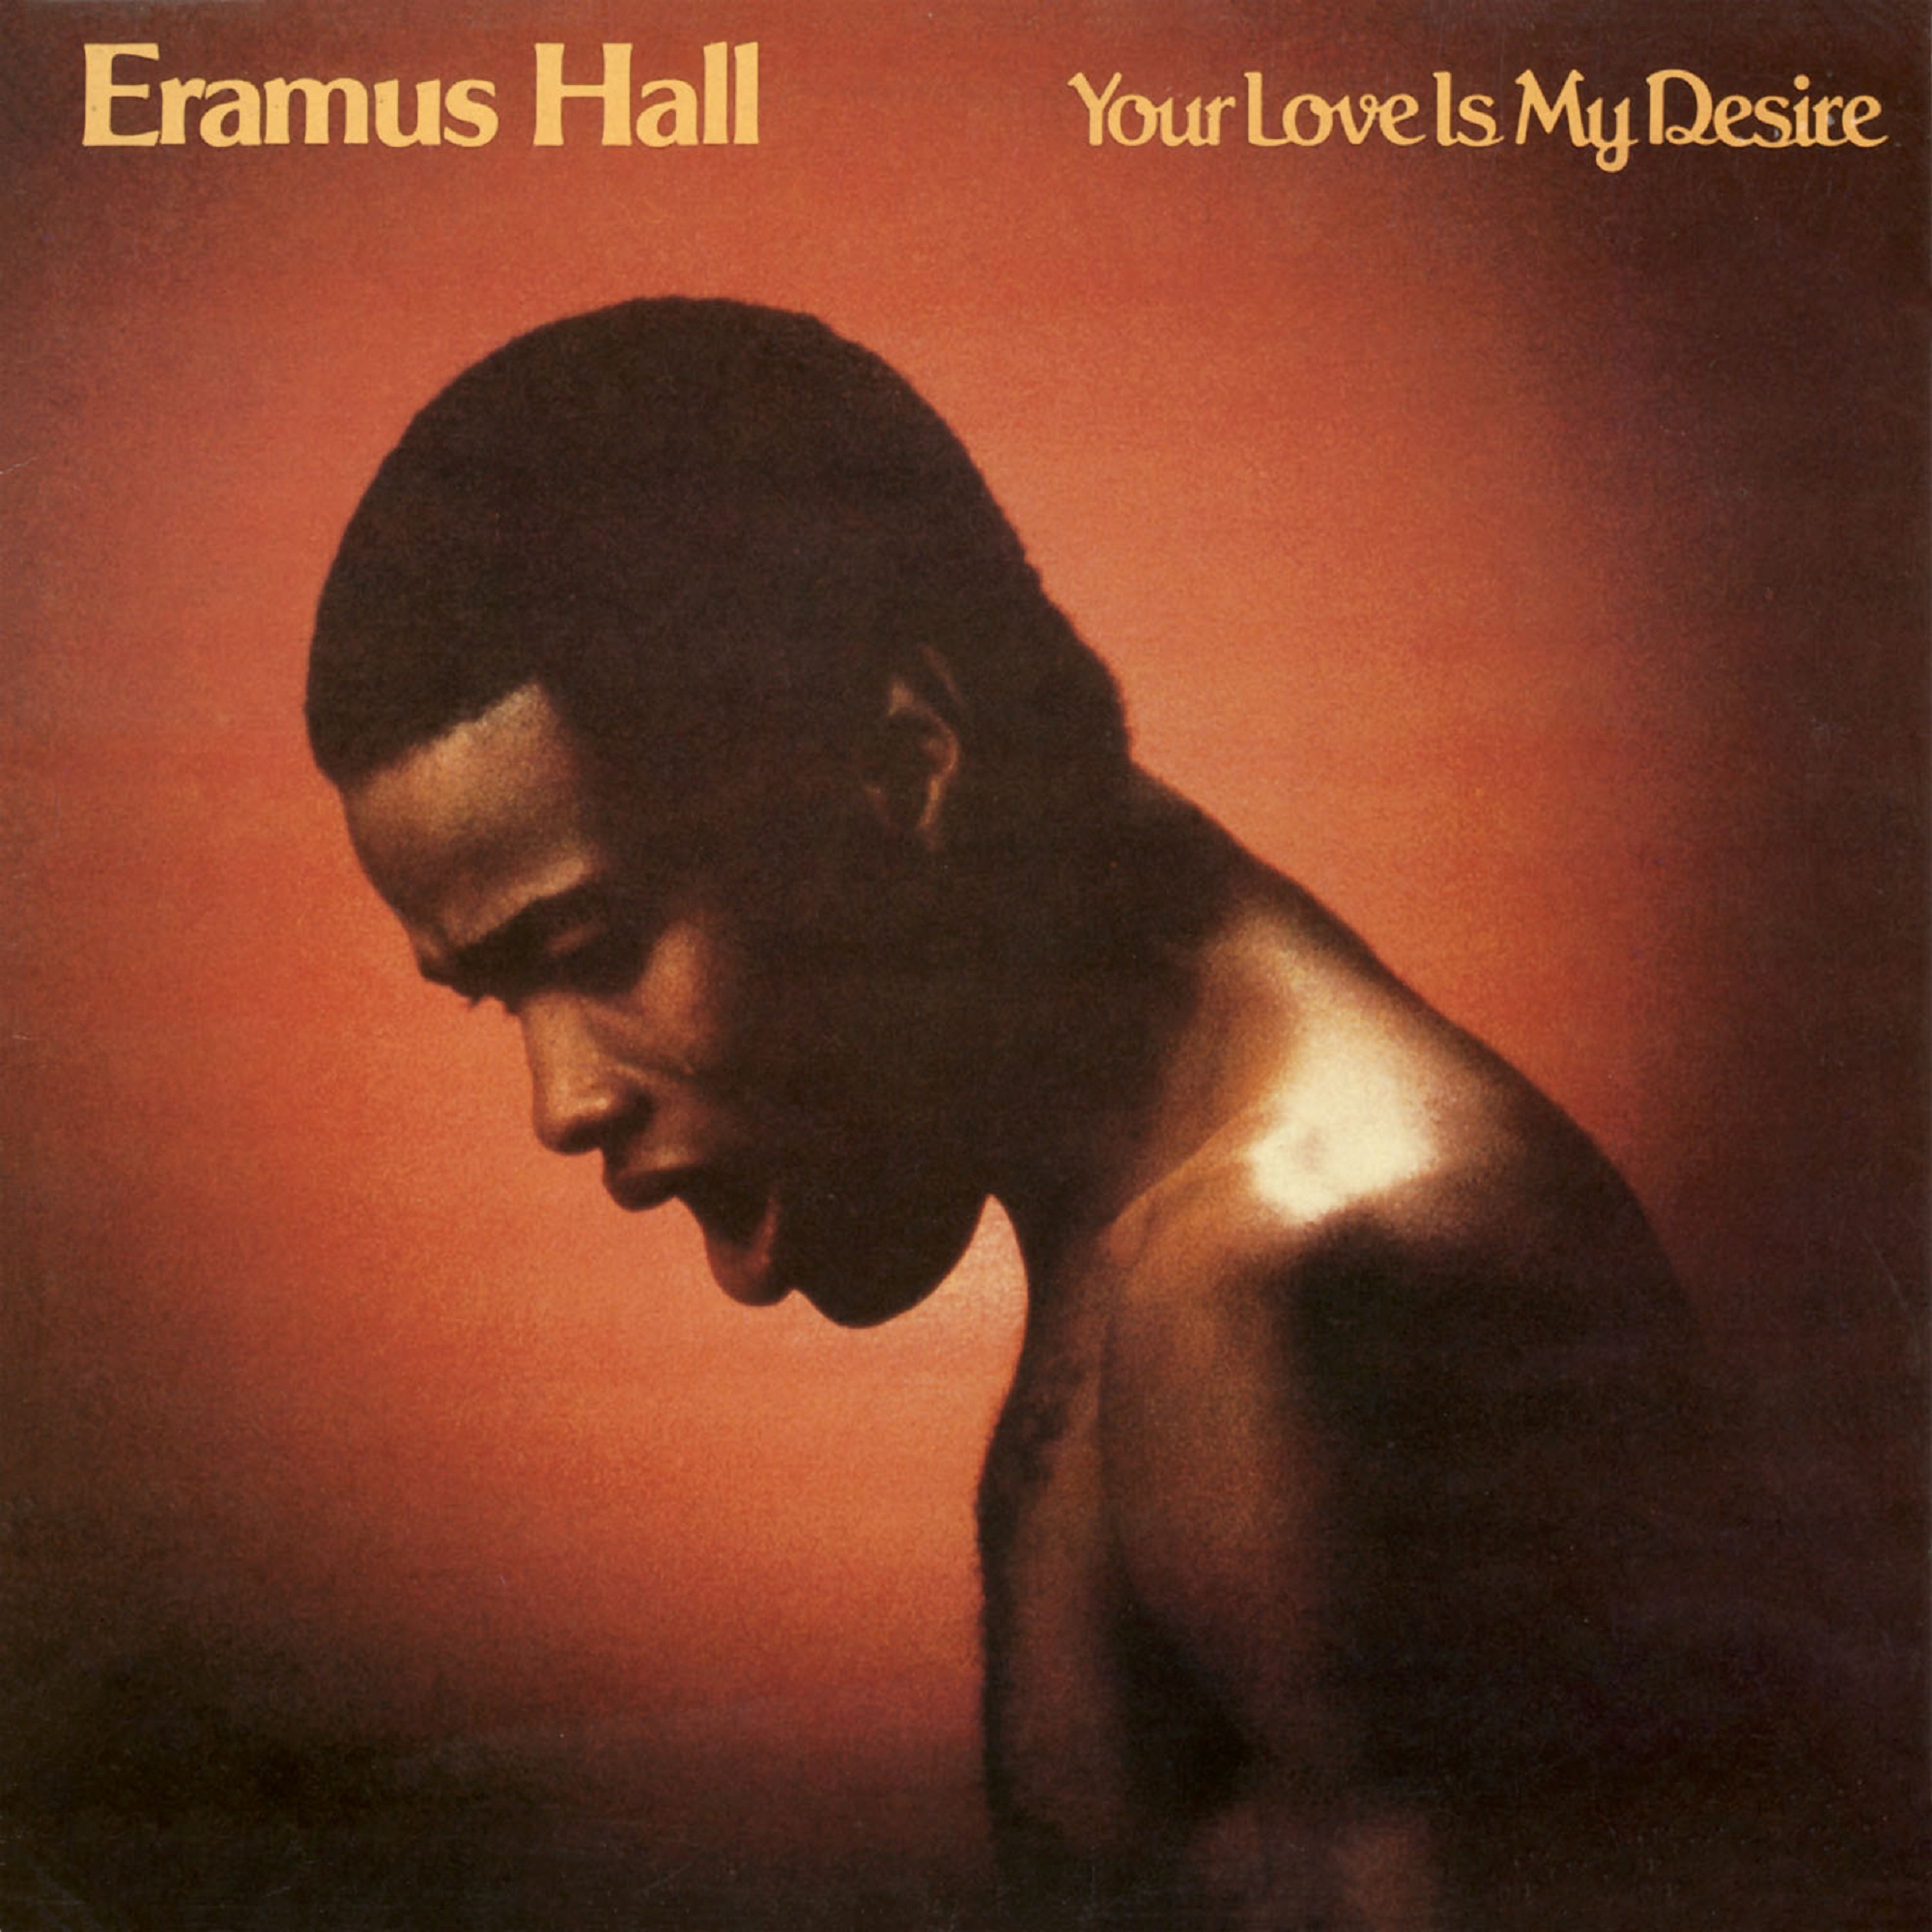 Eramus Hall/YOUR LOVE LP